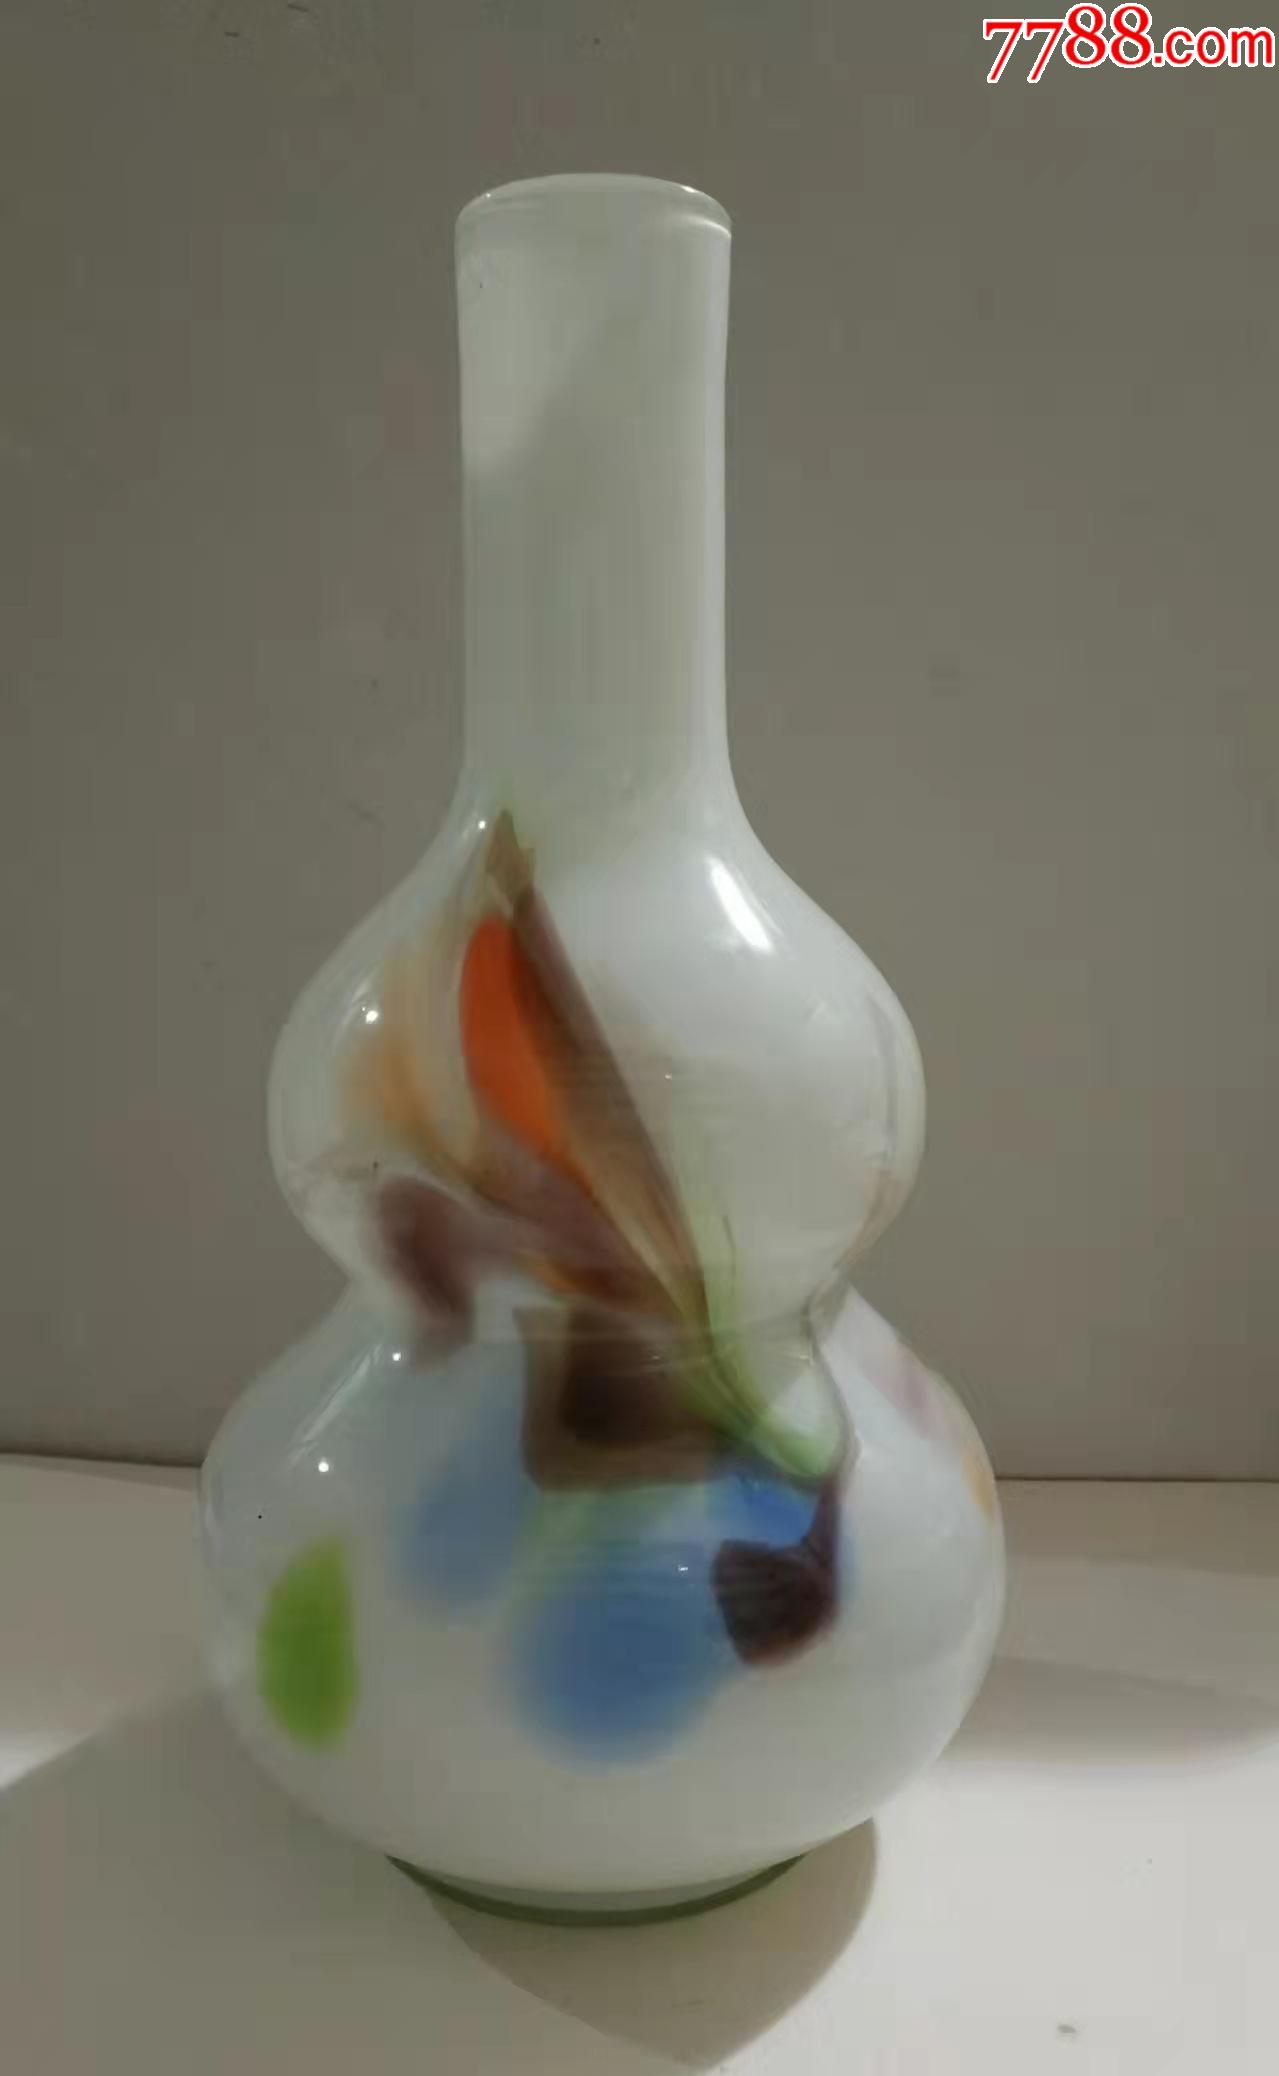 七彩绞釉葫芦型玻璃花瓶少见